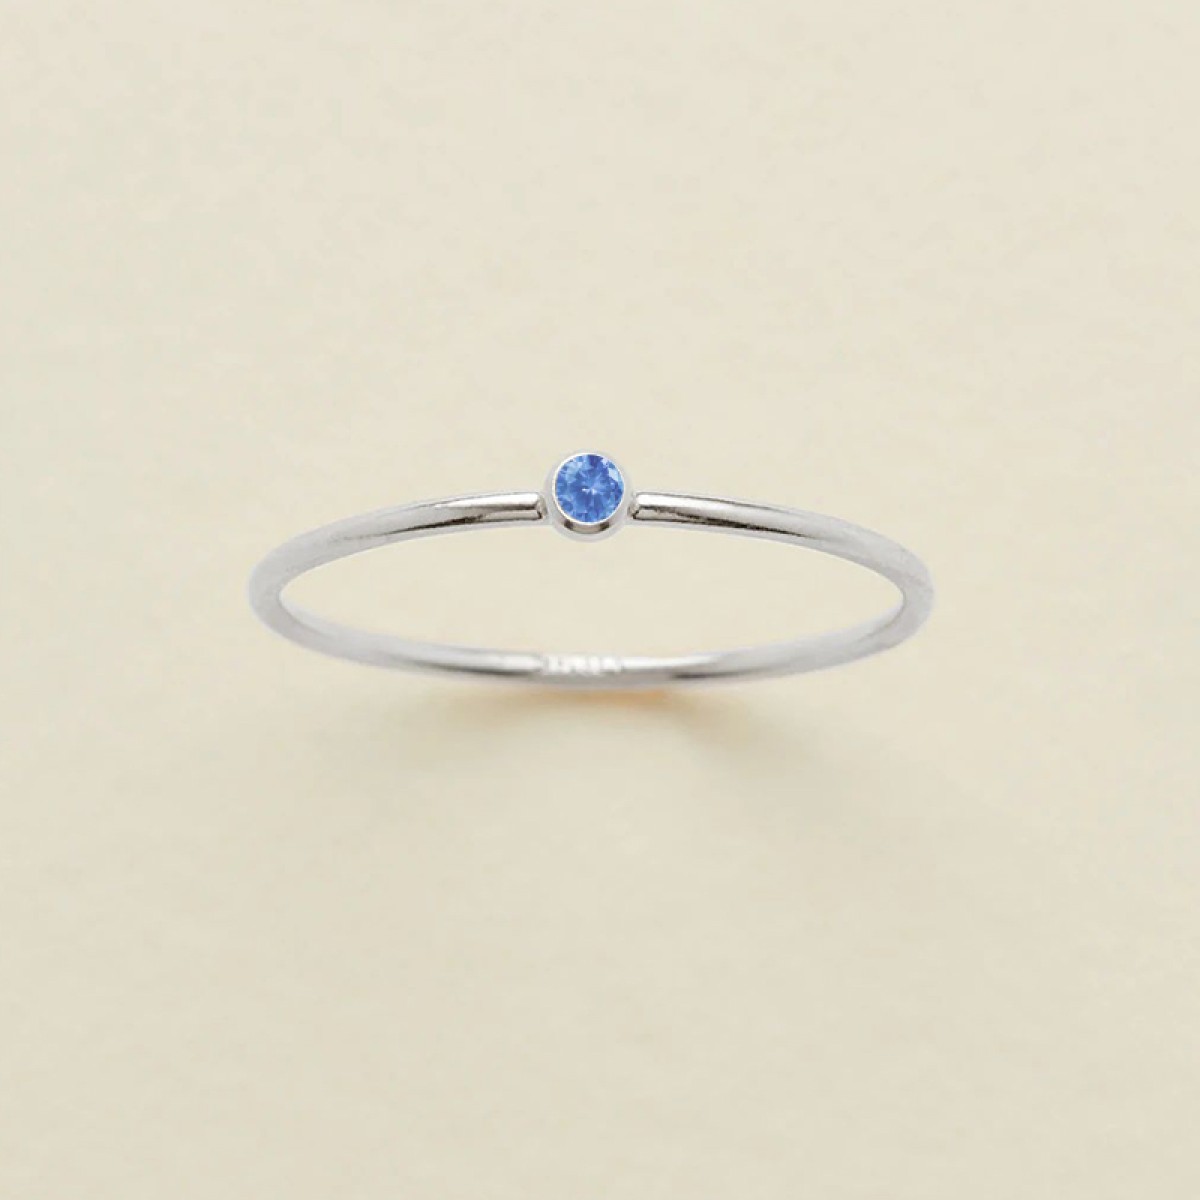 Anoa Ring Geburtsstein Birthstone Monat März Light Sapphire Blau Silber